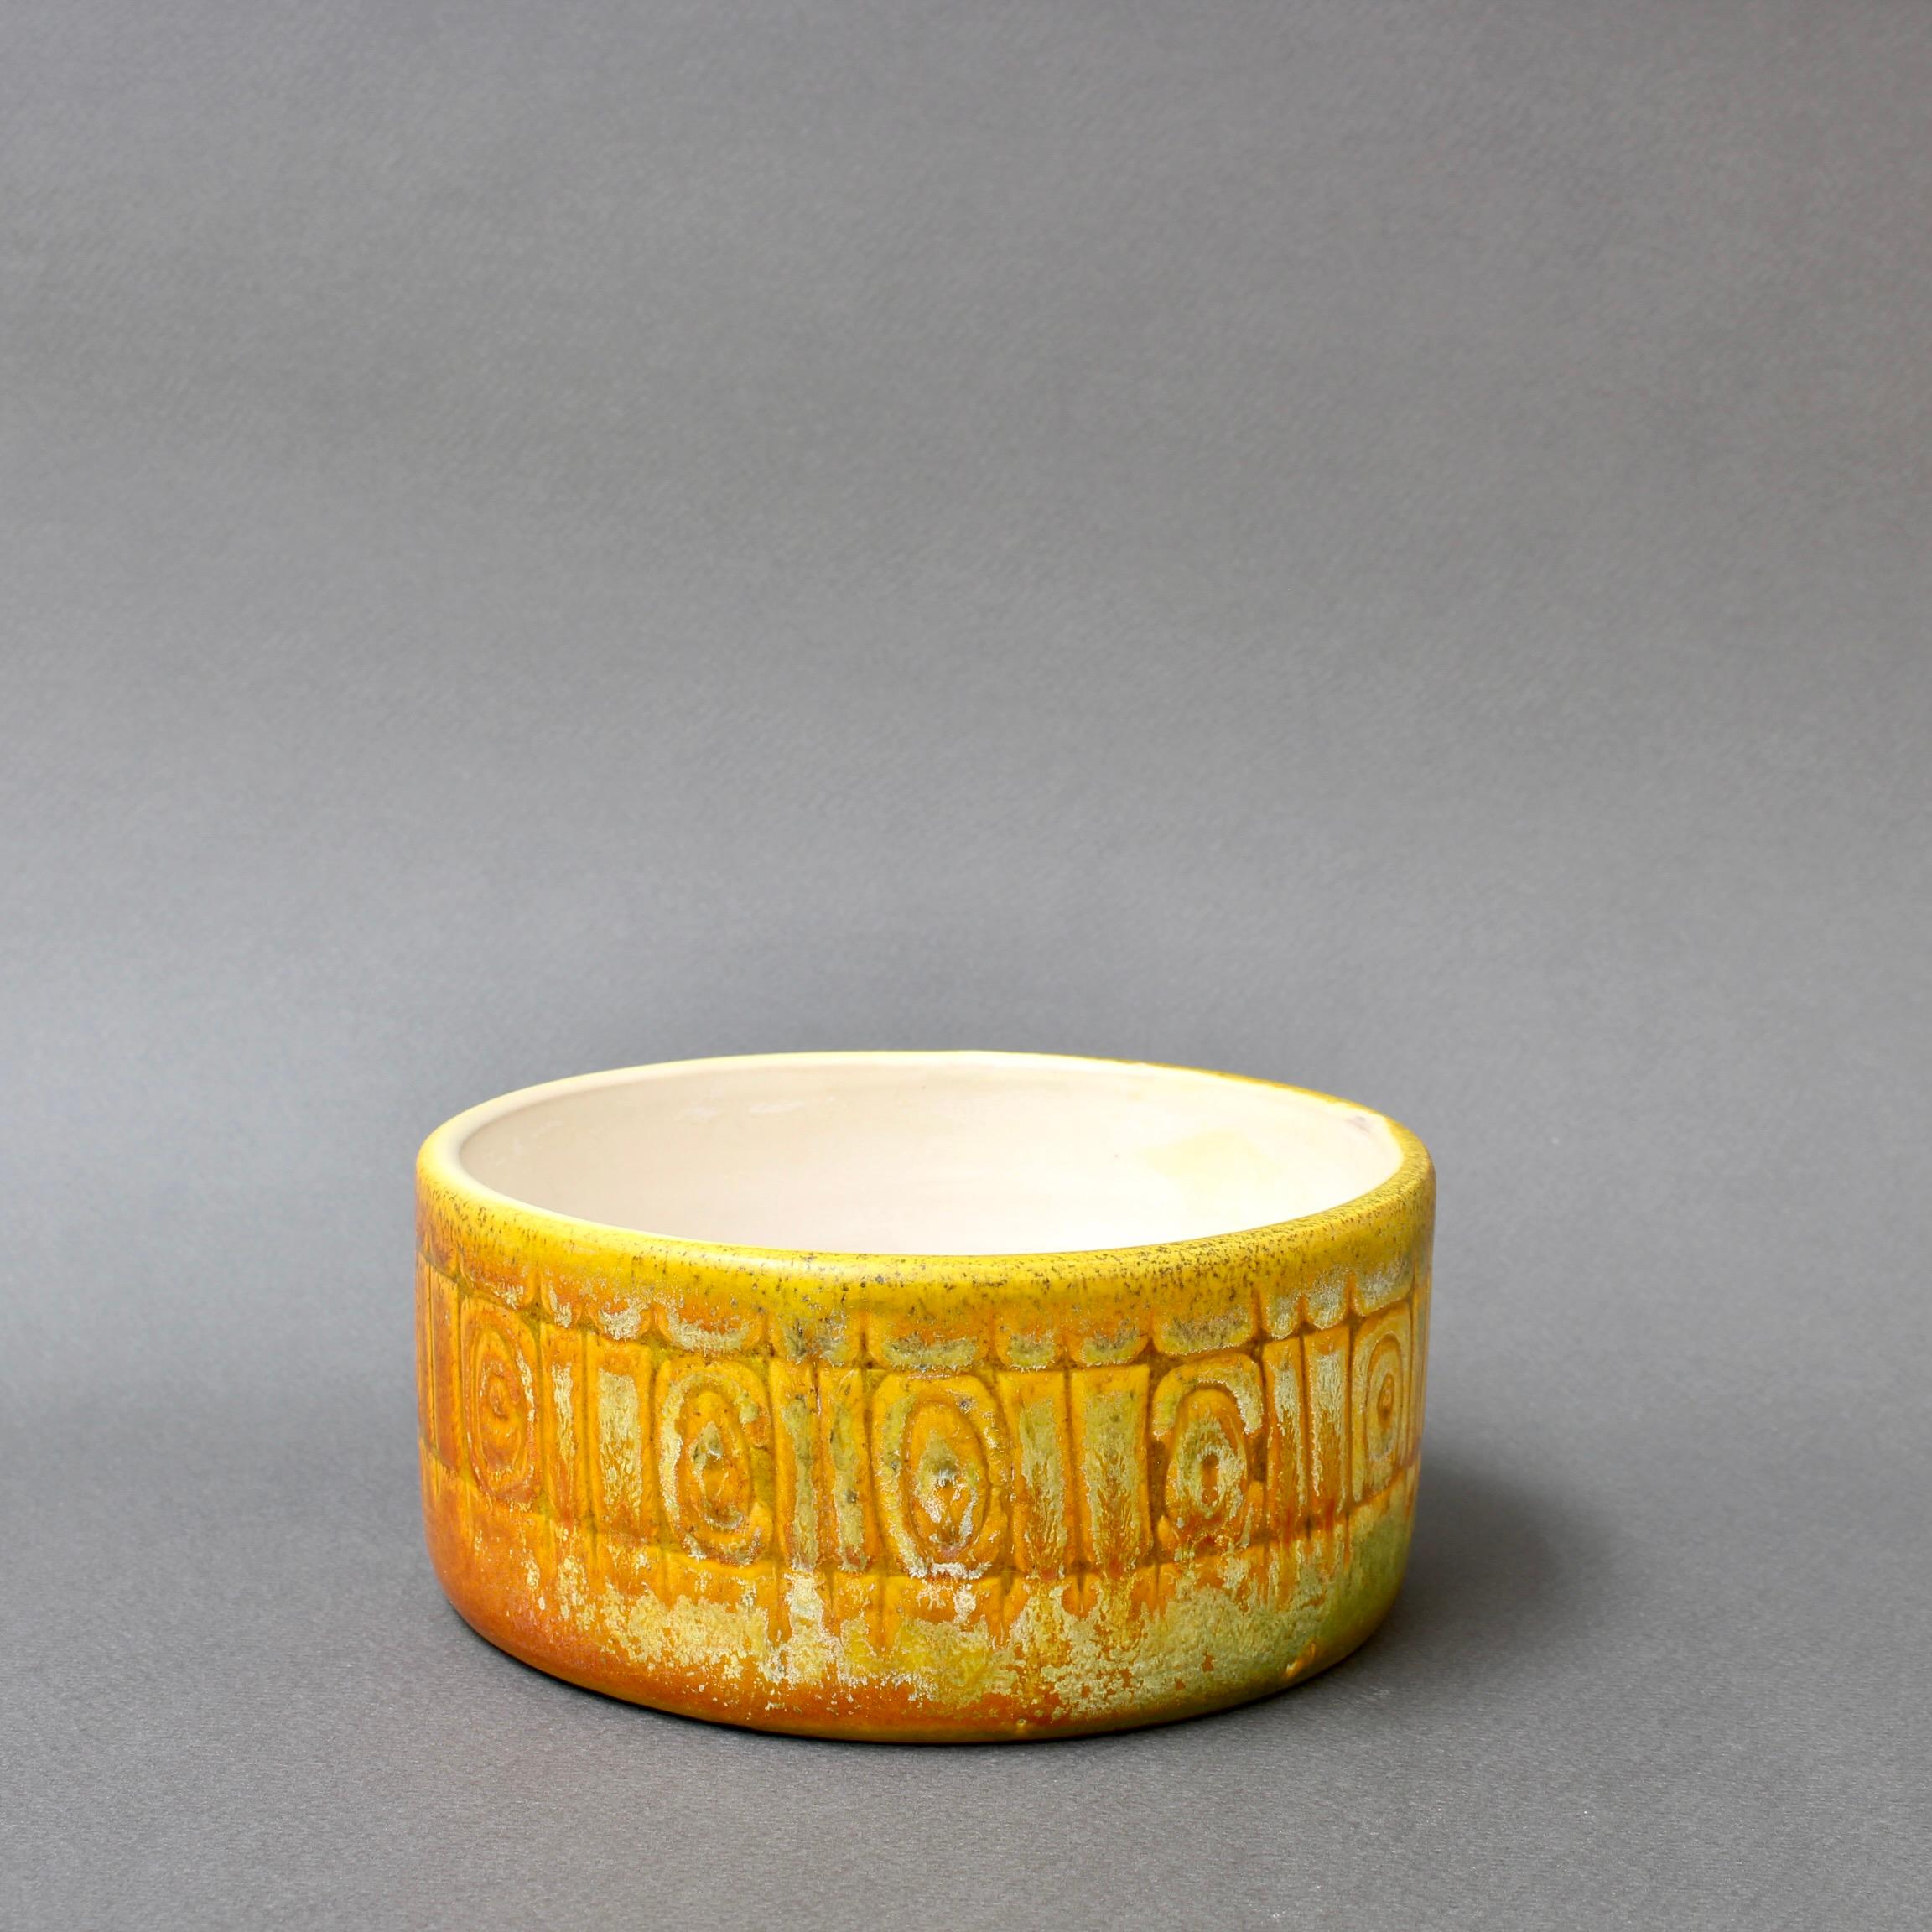 Vintage Schale aus italienischer Keramik von Alessio Tasca (1962). Ein reizvoller Fries aus geometrischen Formen umgibt das Stück. Die verblassenden Farben in Gelb und Orange verleihen einem Vintage-Stück dieses weltberühmten italienischen